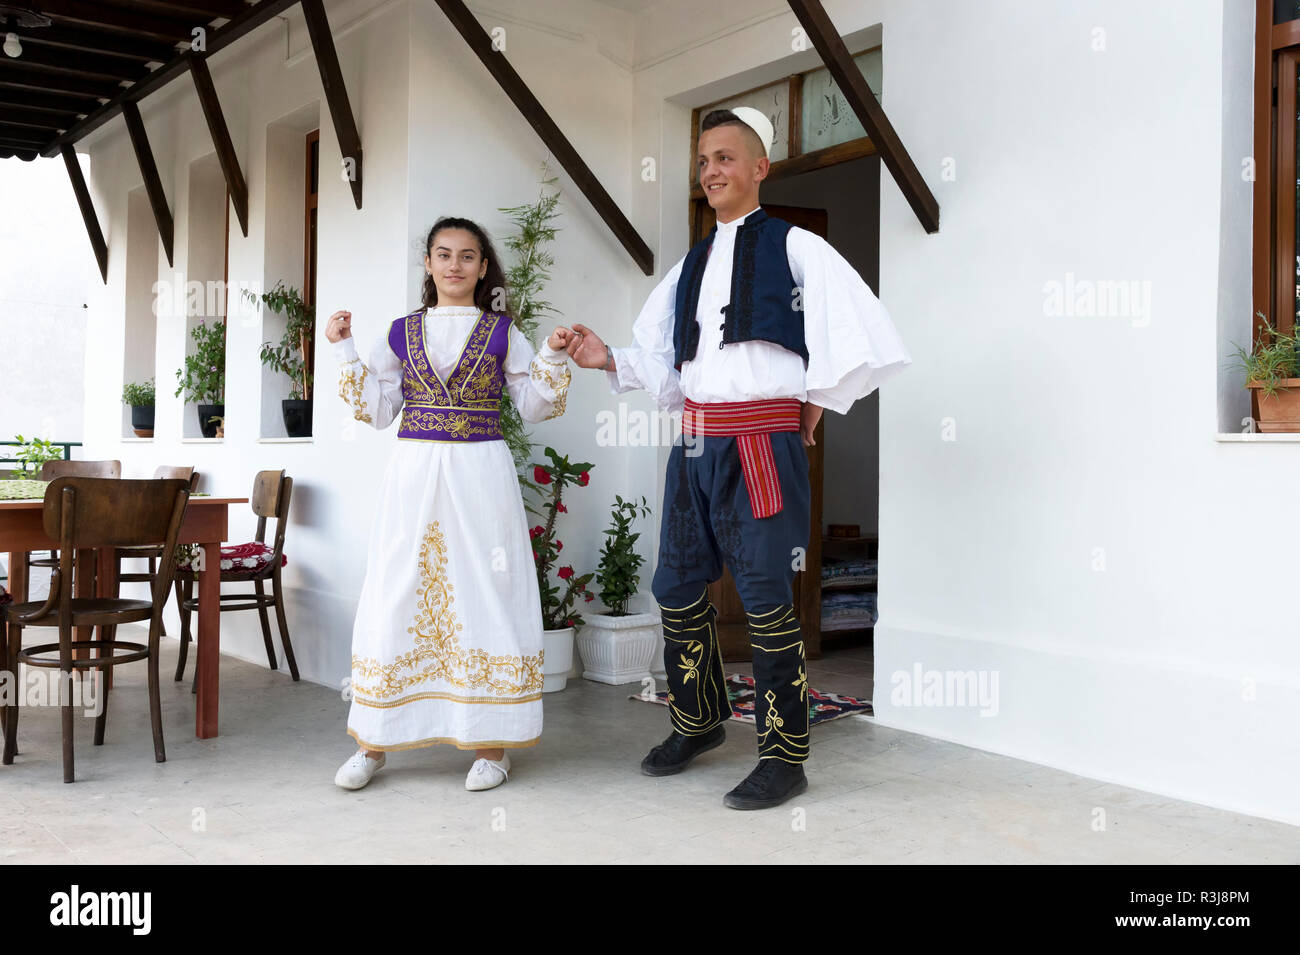 Locale gruppo folkloristico in costume tradizionale dimostrando nazionale di danza albanese, Berat, Albania Foto Stock